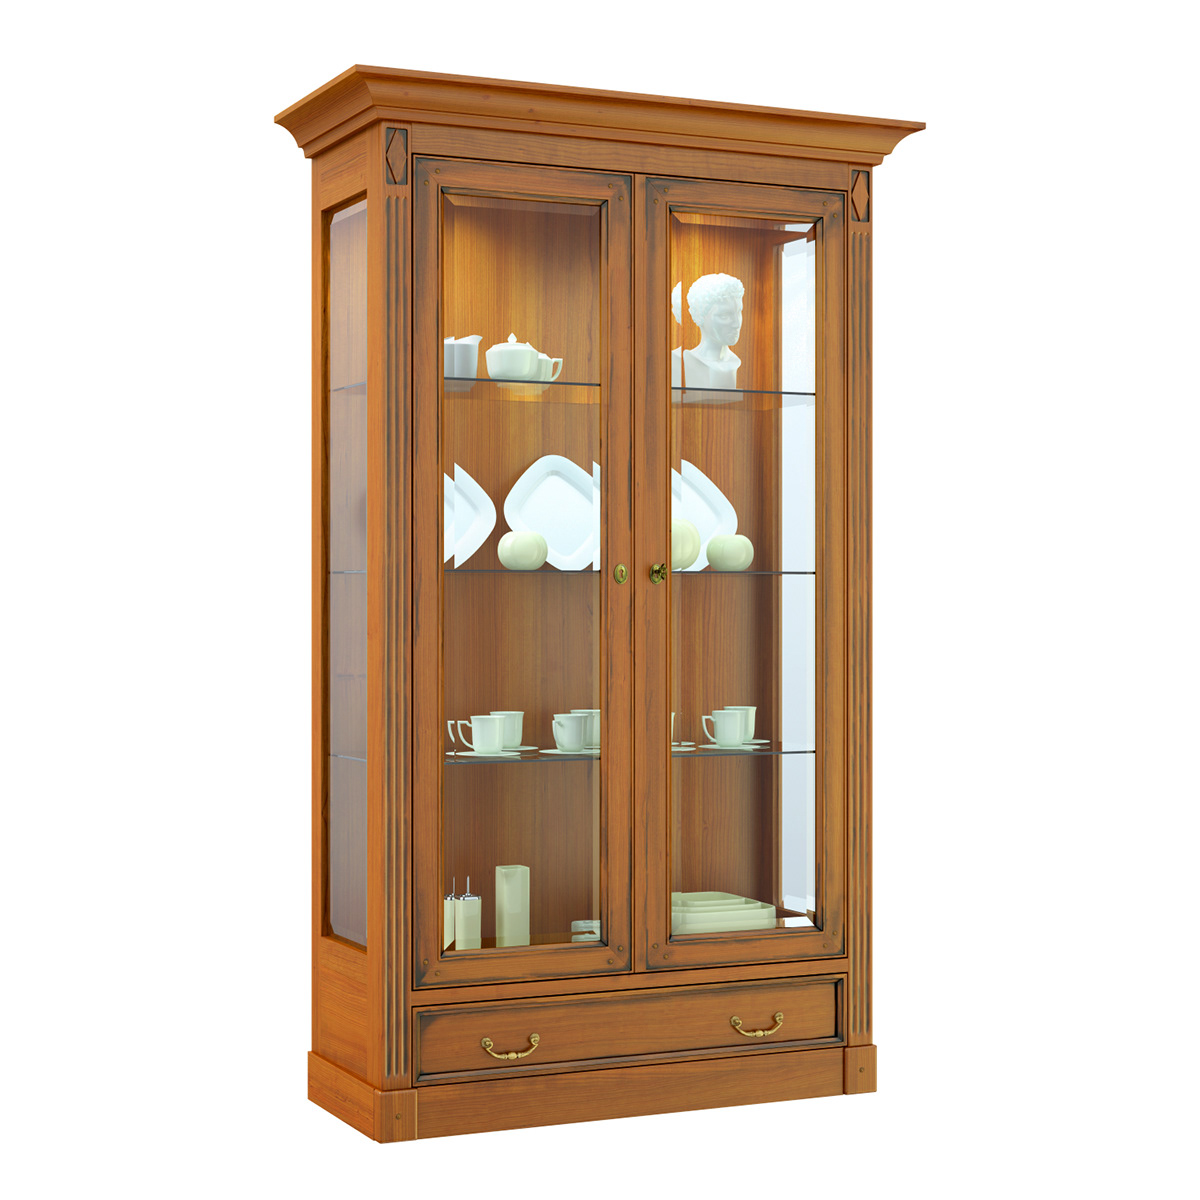 Triant Jan Safarik 3d bank 3D model closet cabinet